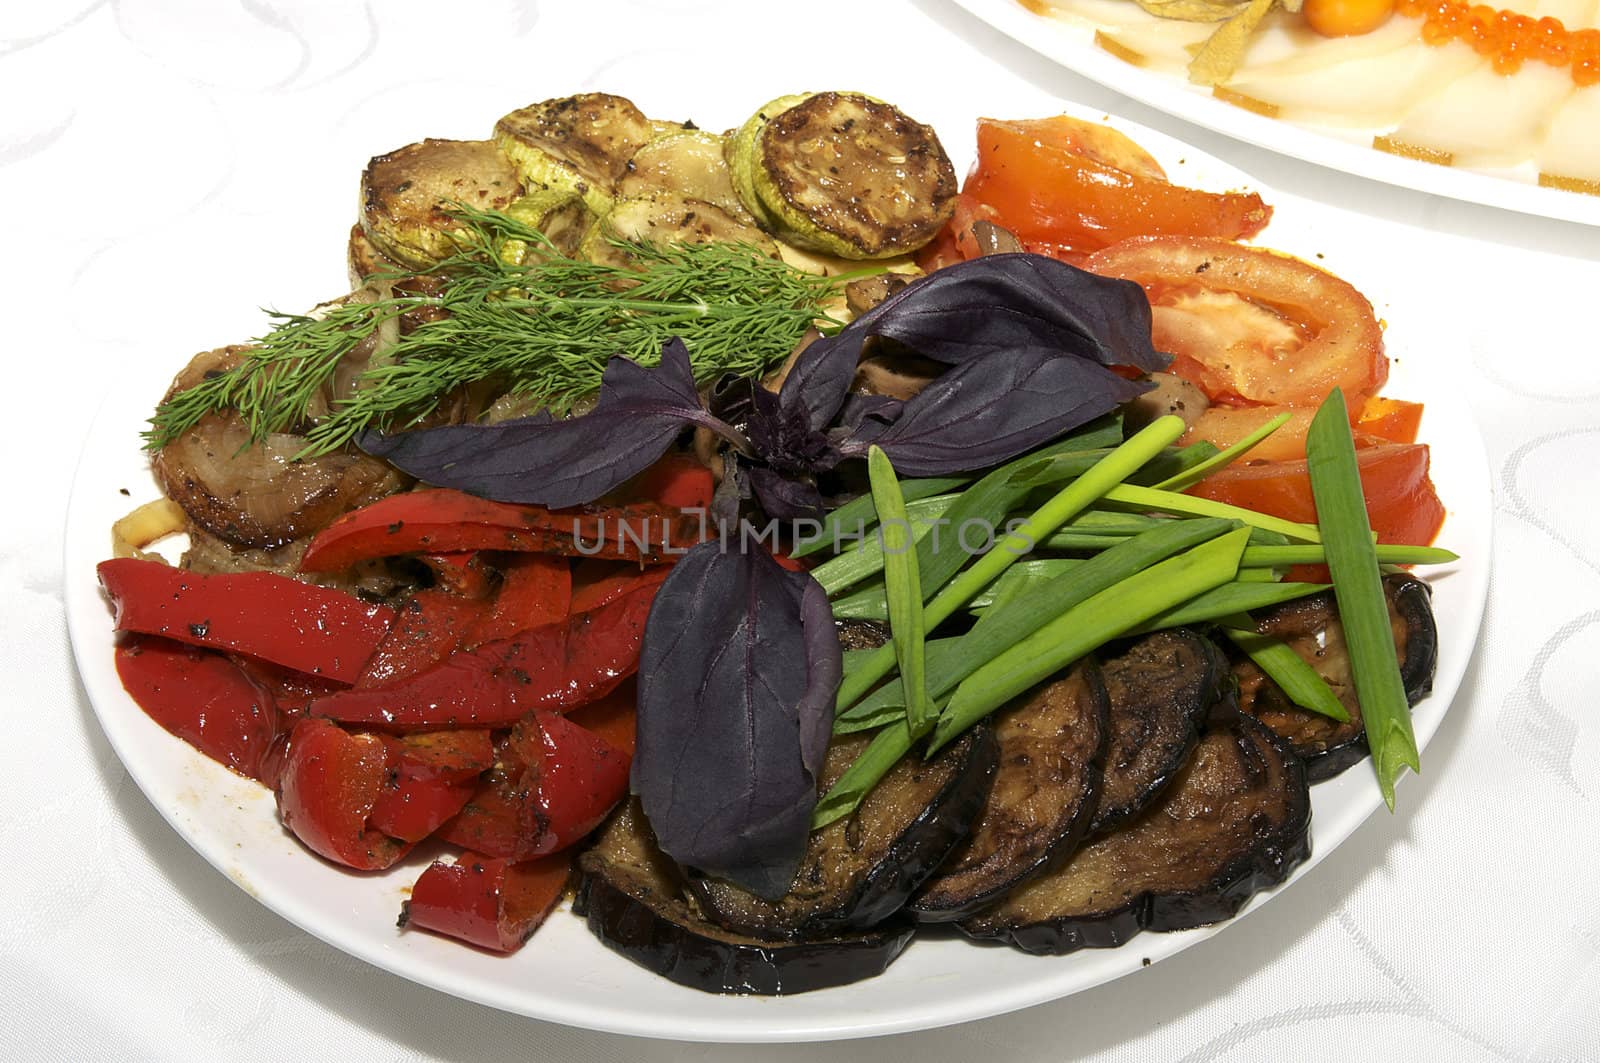 grilled vegetables by Lester120